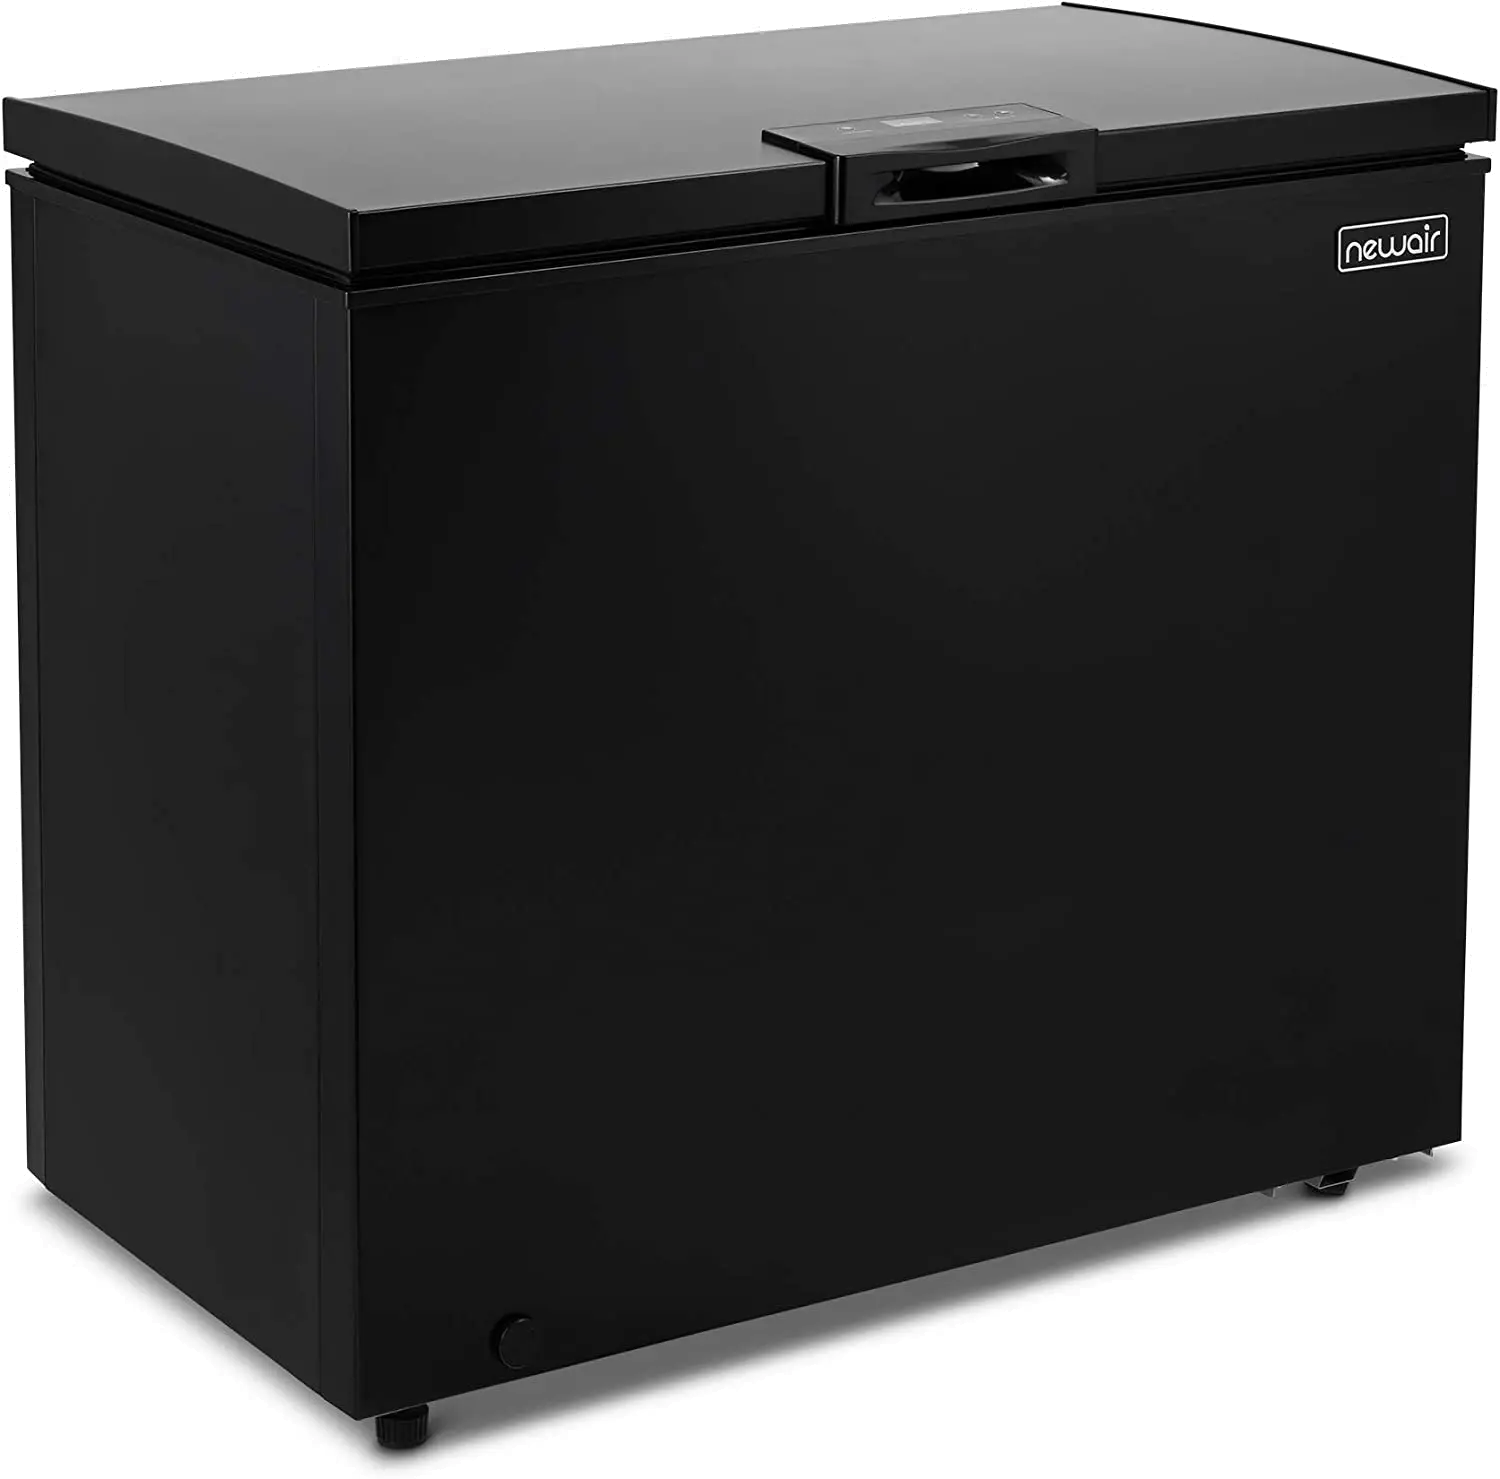 Newair 6.7 Cu. Ft. Compact Chest Freezer - Matte Black